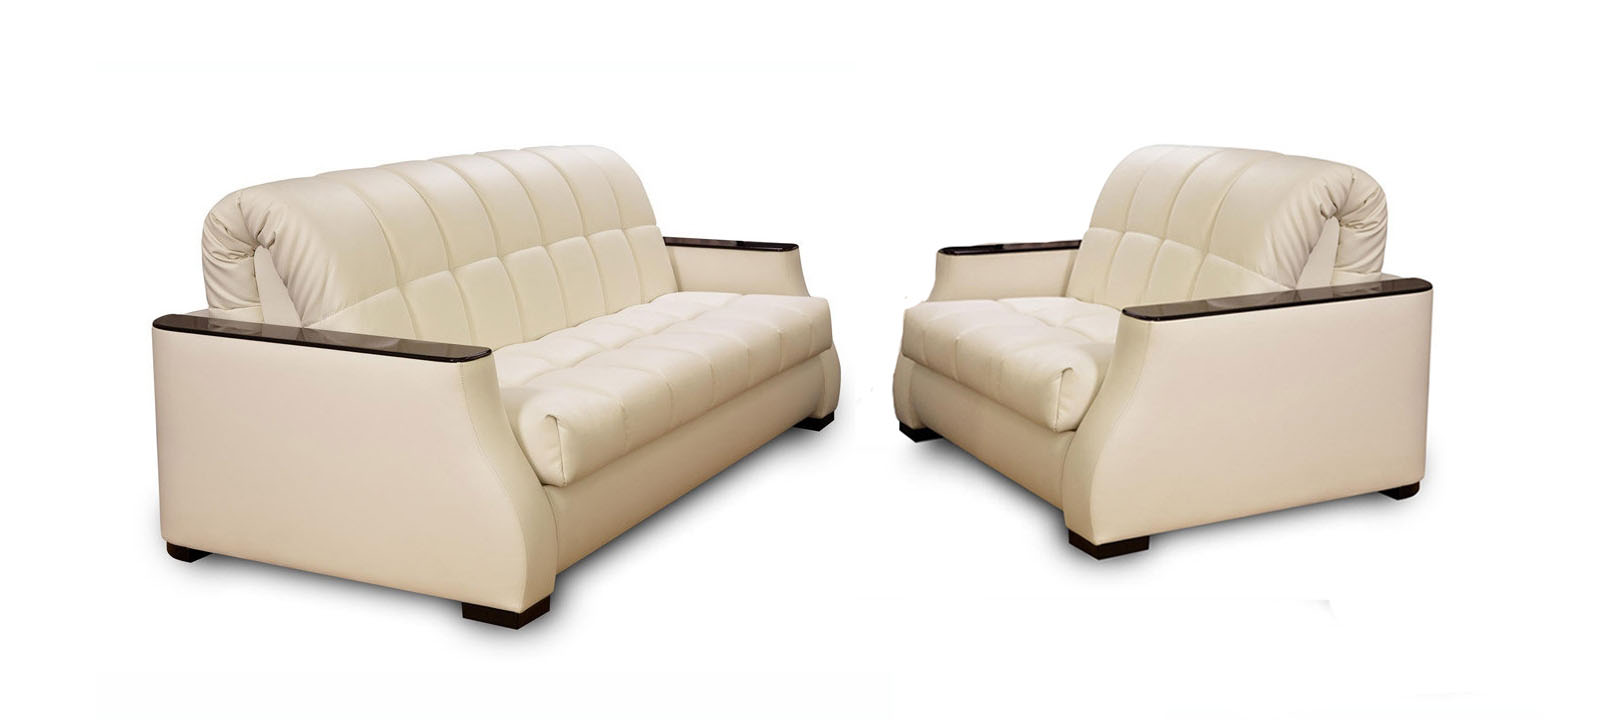 диван и кресло комплект от производителя